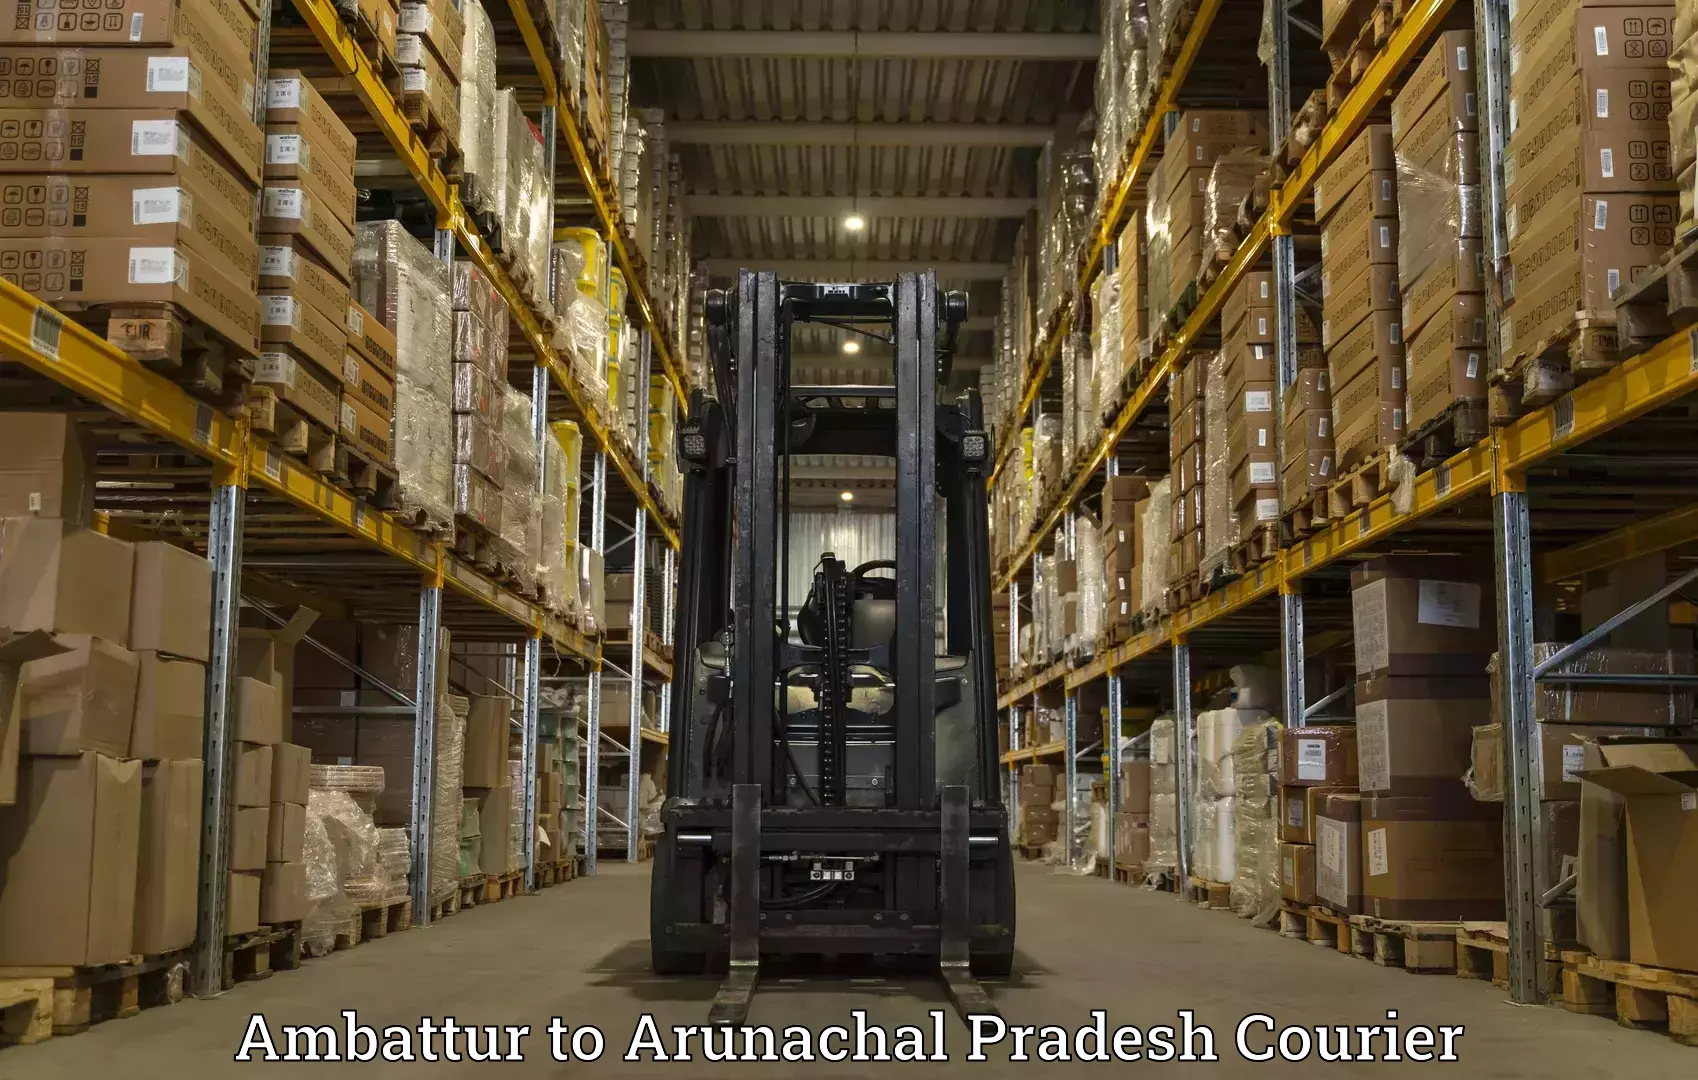 User-friendly courier app Ambattur to Arunachal Pradesh